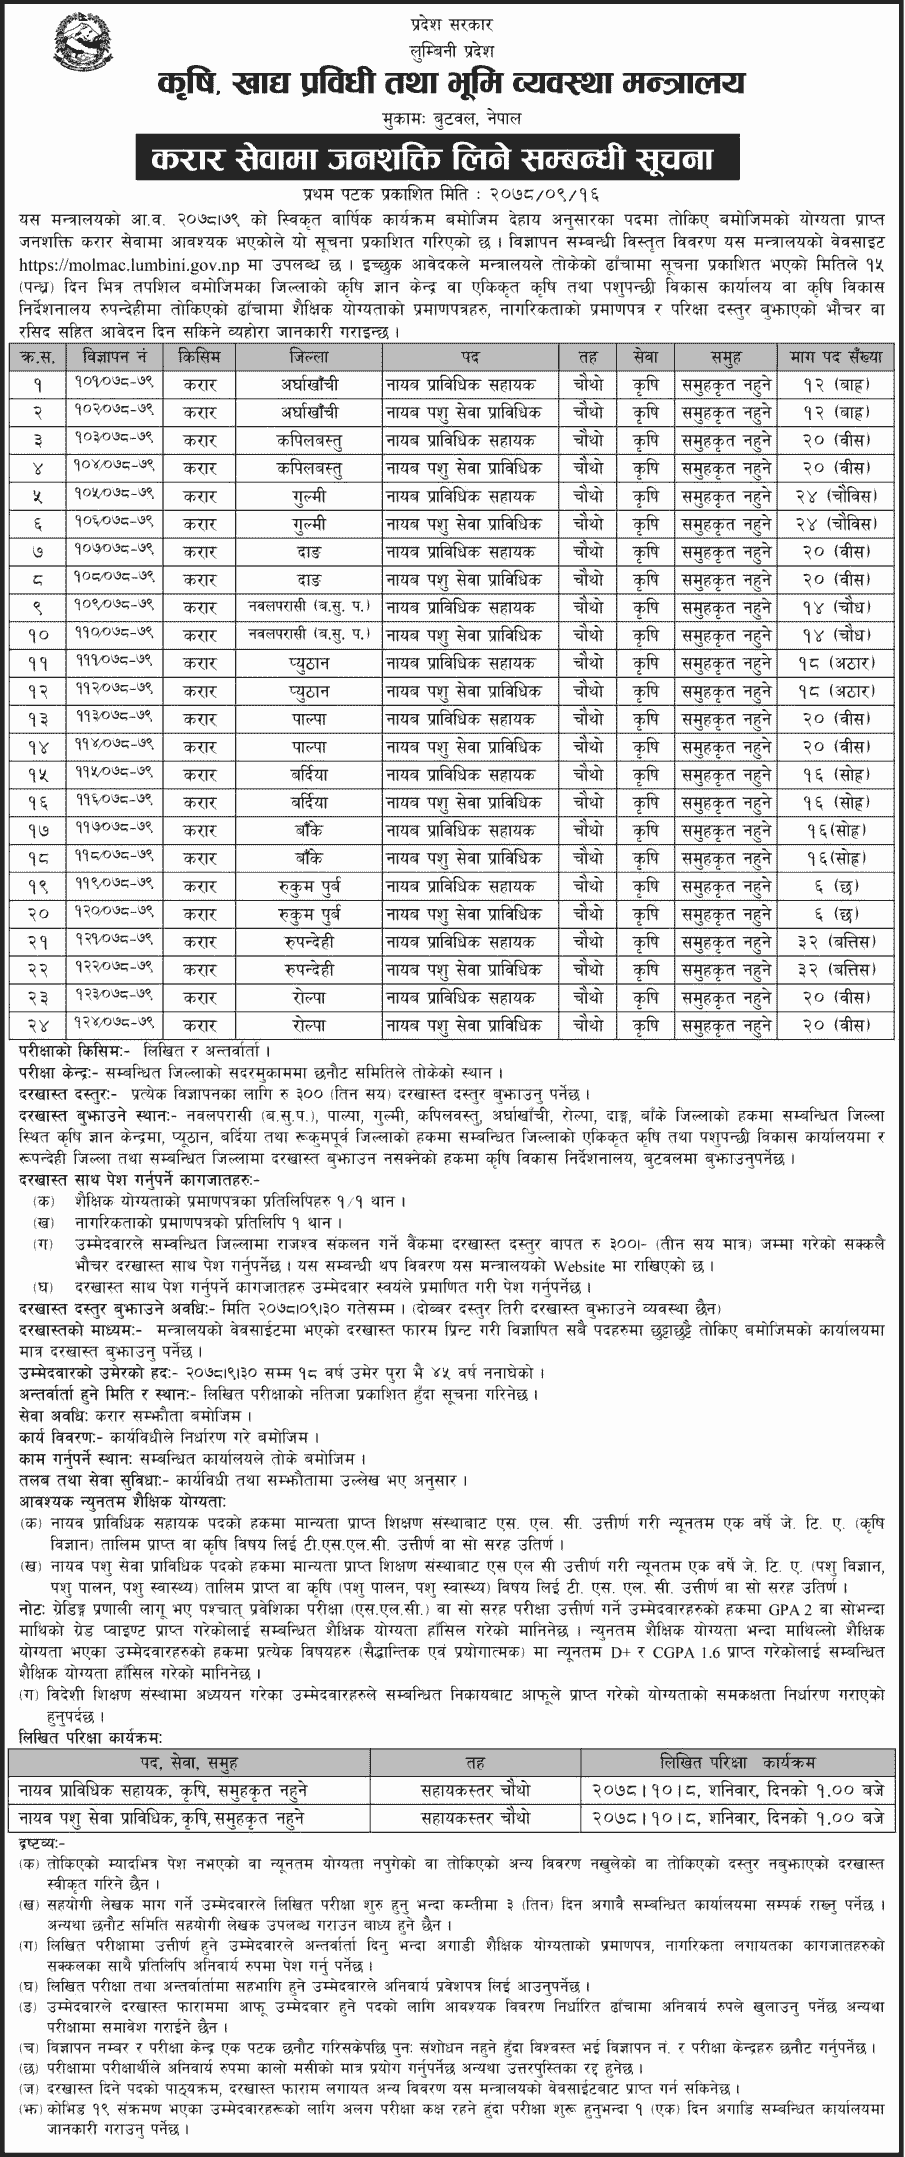 Lumbini Pradesh Vacancy for JTA and VJTA